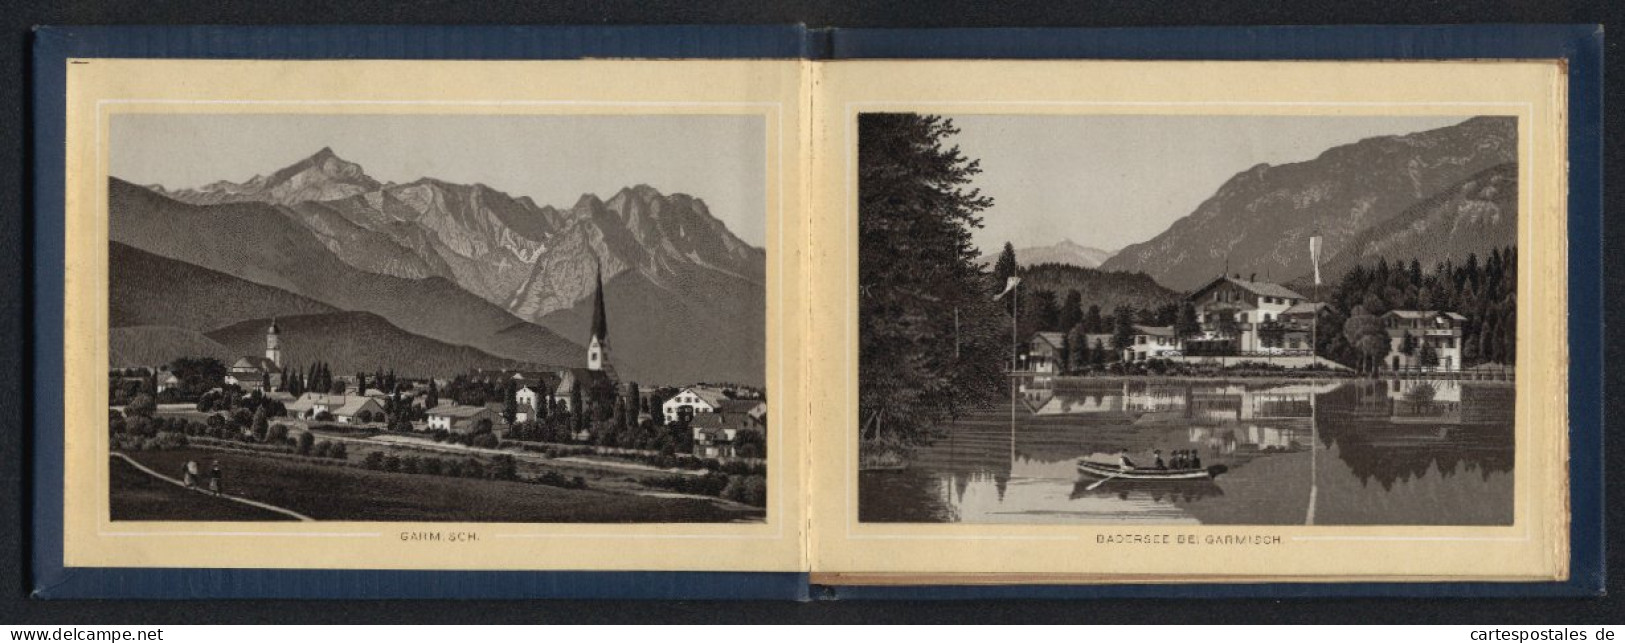 Leporello-Album Garmisch Und Umgebung Mit 19 Lithographie-Ansichten, Barmsee, Leutaschklamm, Mittenwald, Garmisch  - Lithographien